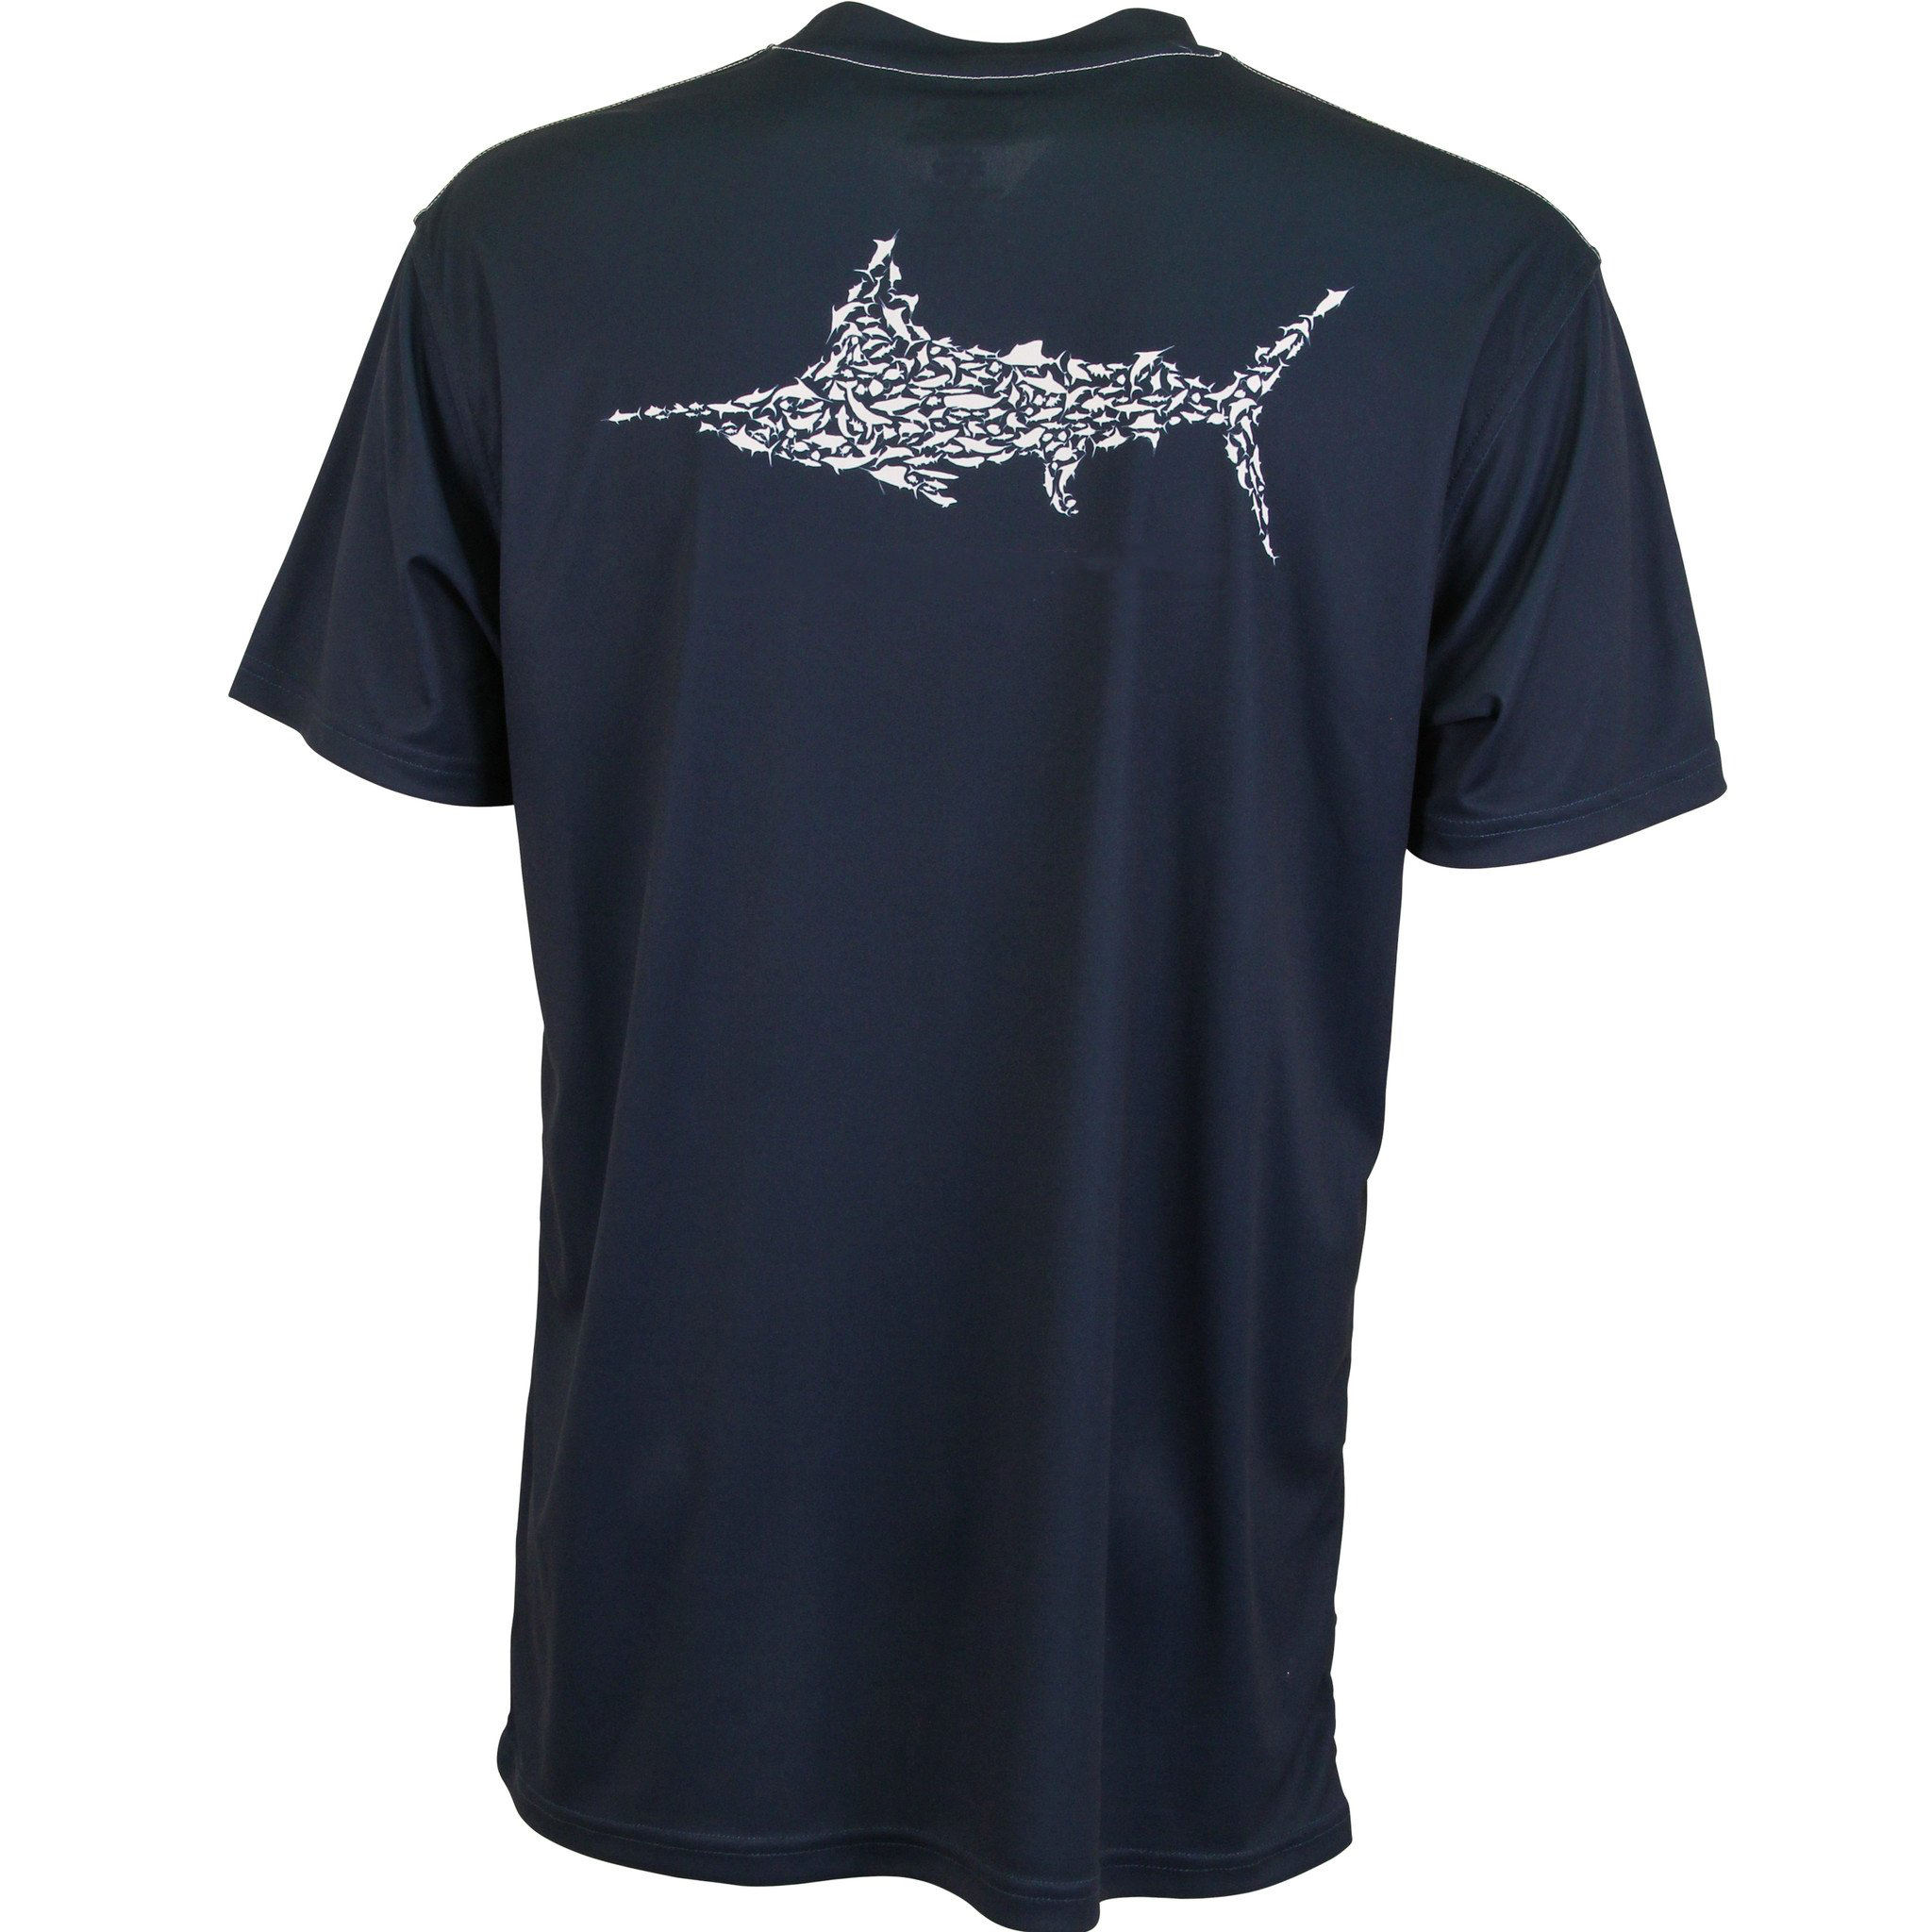 Brzo sušeća muška ribolovačka majica s prilagođenim logotipom OEM proizvođača od 100% poliestera za zaštitu od sunca